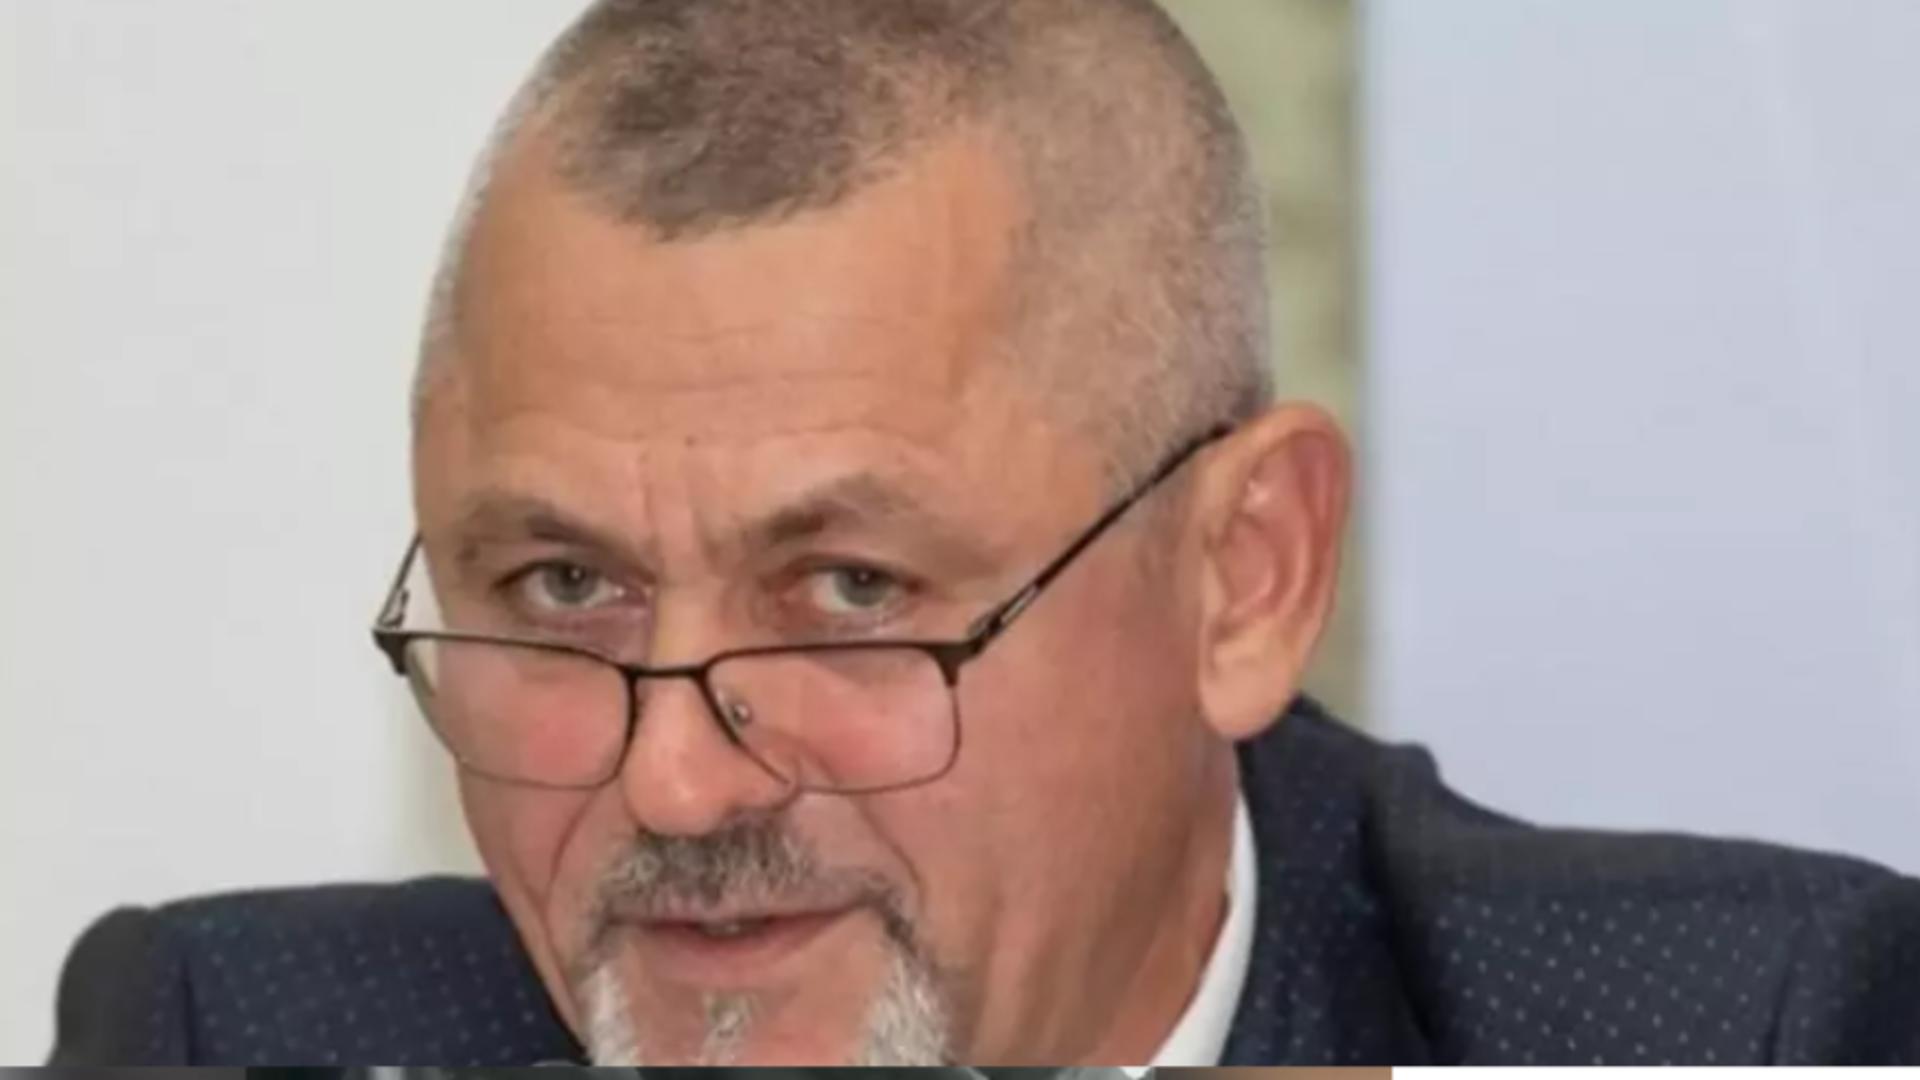 Deputatul Dumitru Focșa a recidivat! Politicianul s-a ales cu ordin de restricție si dosar penal după ce și-a bătut din nou soția. Este a treia oară deja